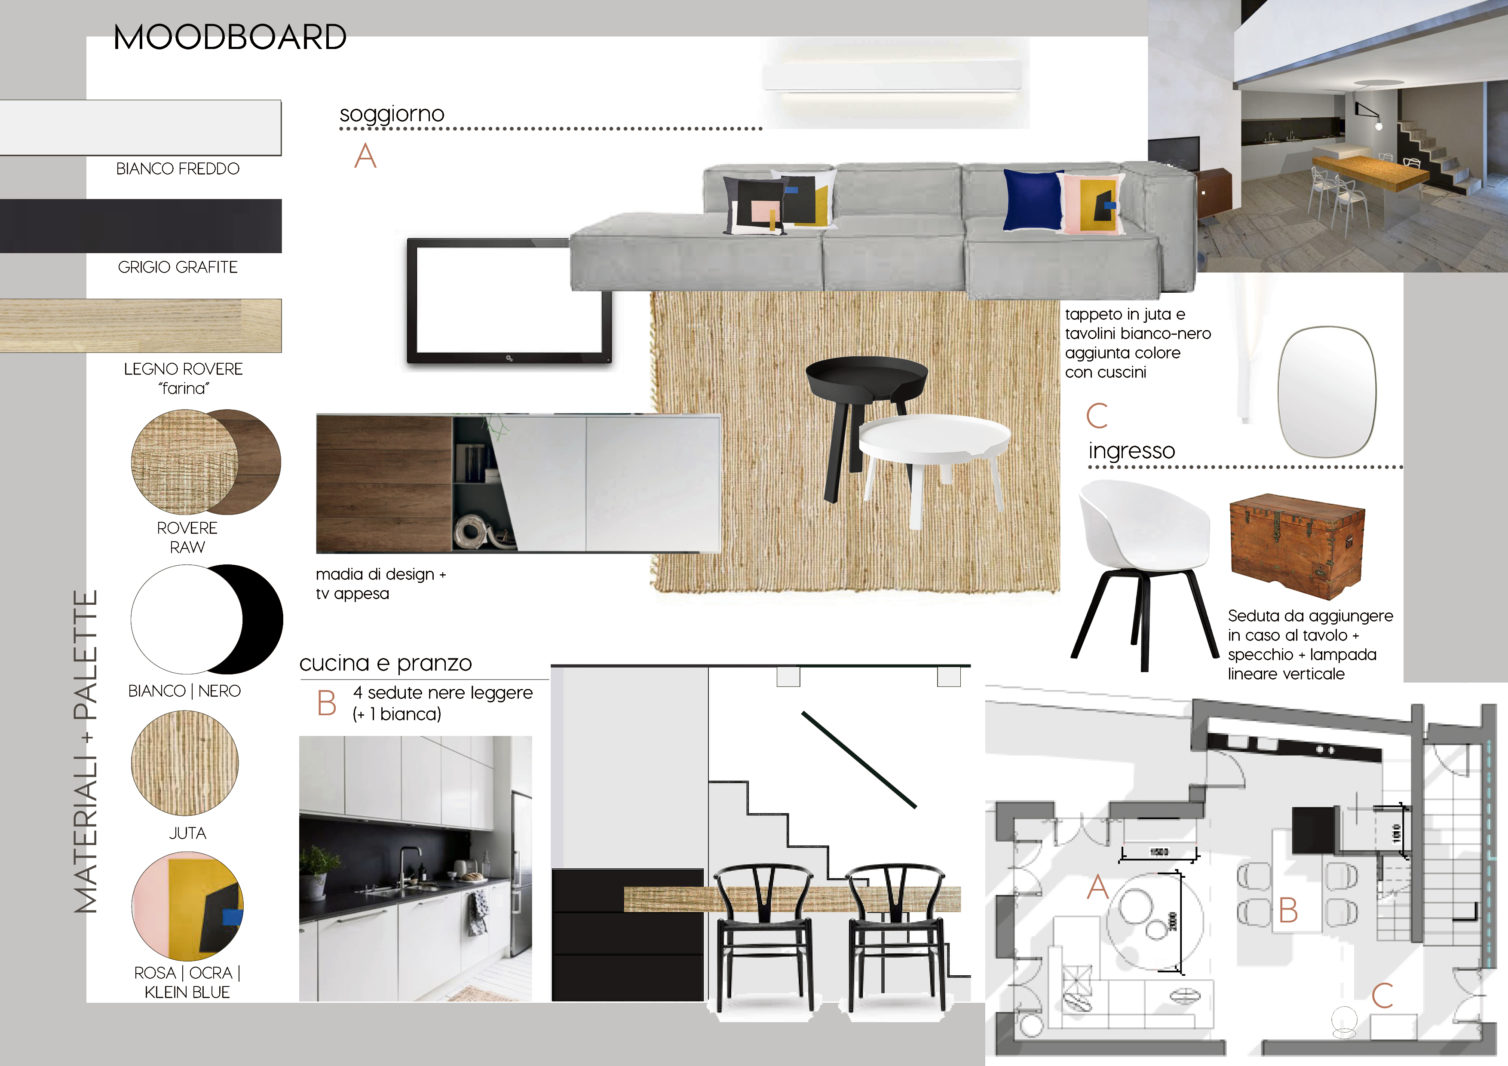 living room design, tomasella arredo soggiorno, arredo sioggiorno moderno, masculine interior design, italianbark, tomasella salone mobile 2017